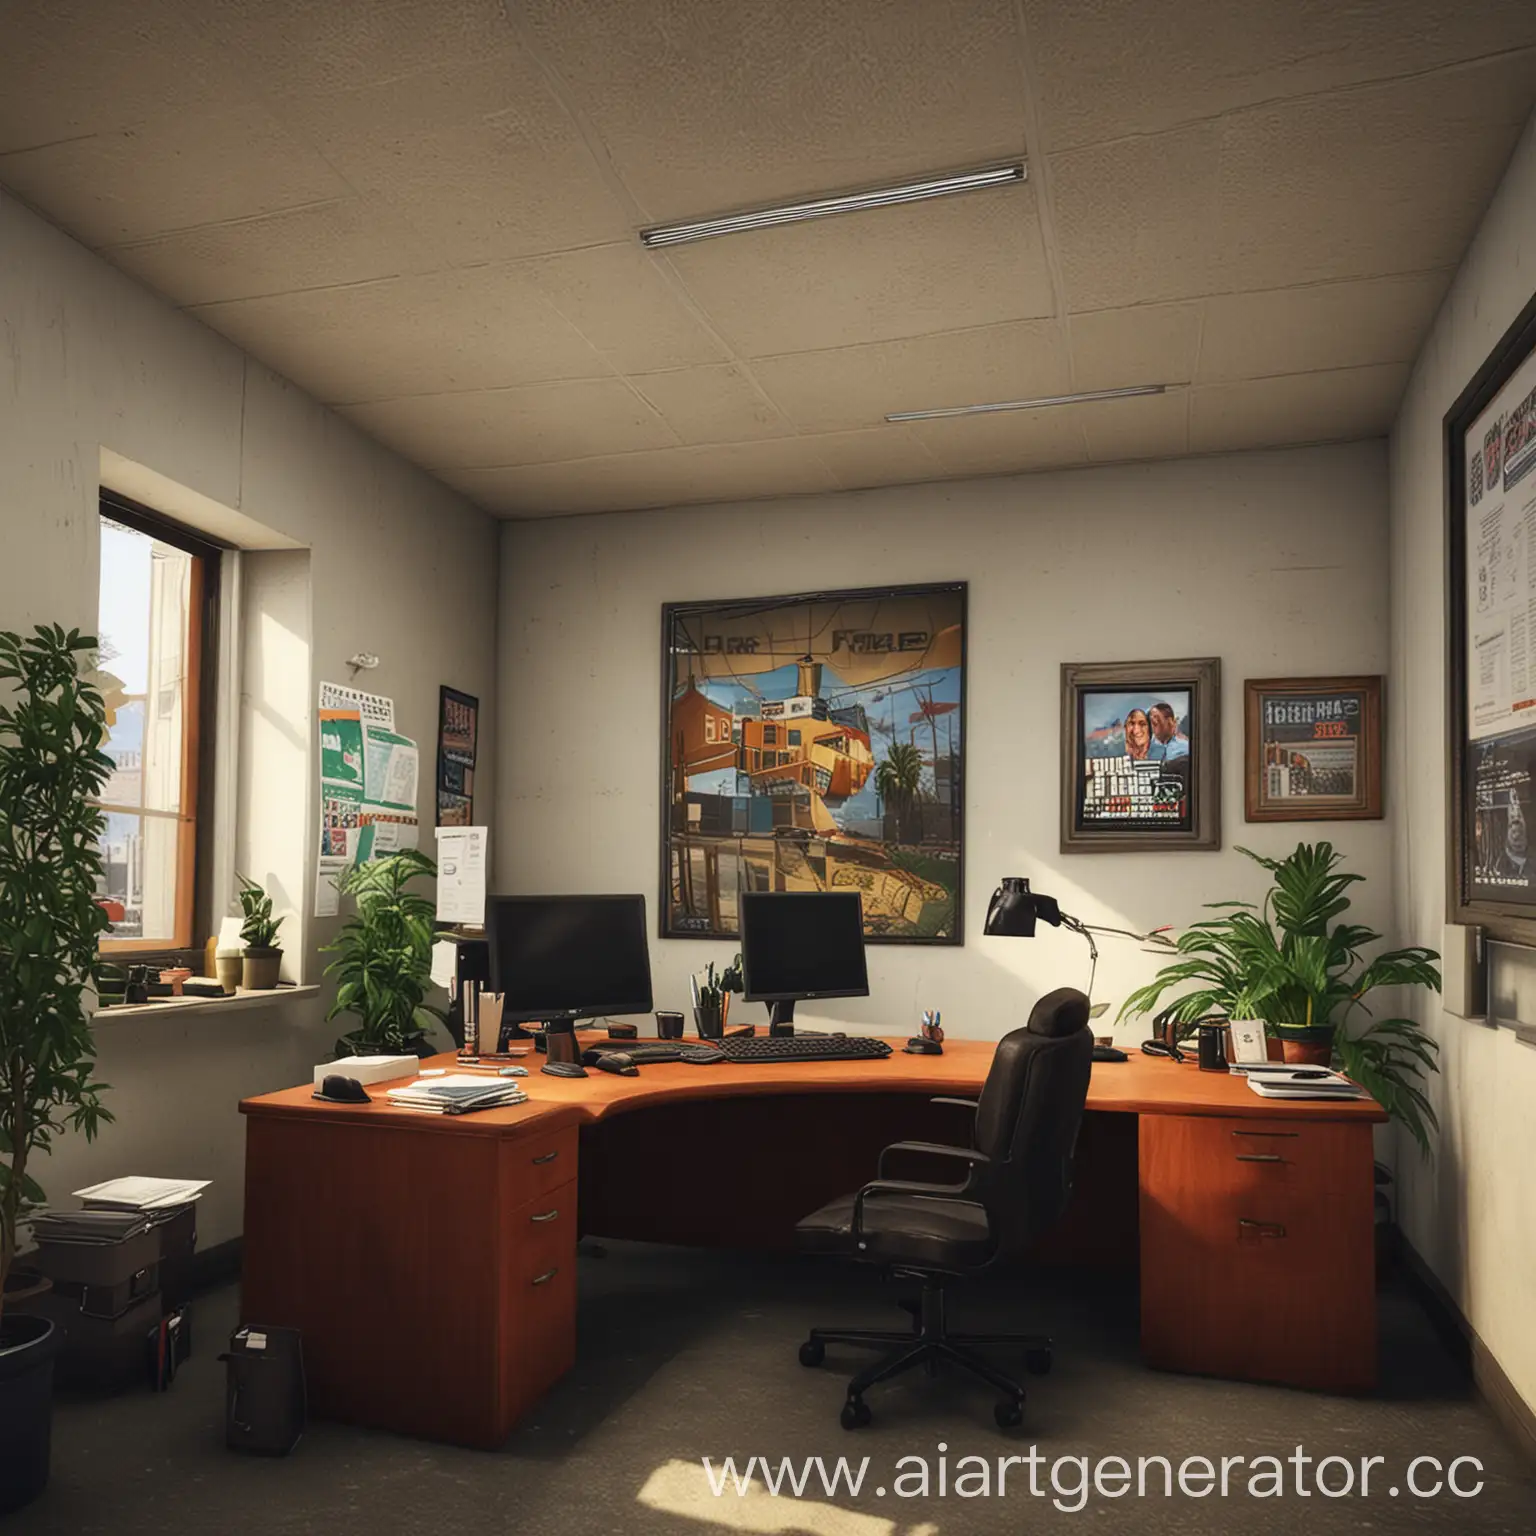 Офис организации GTA 5
